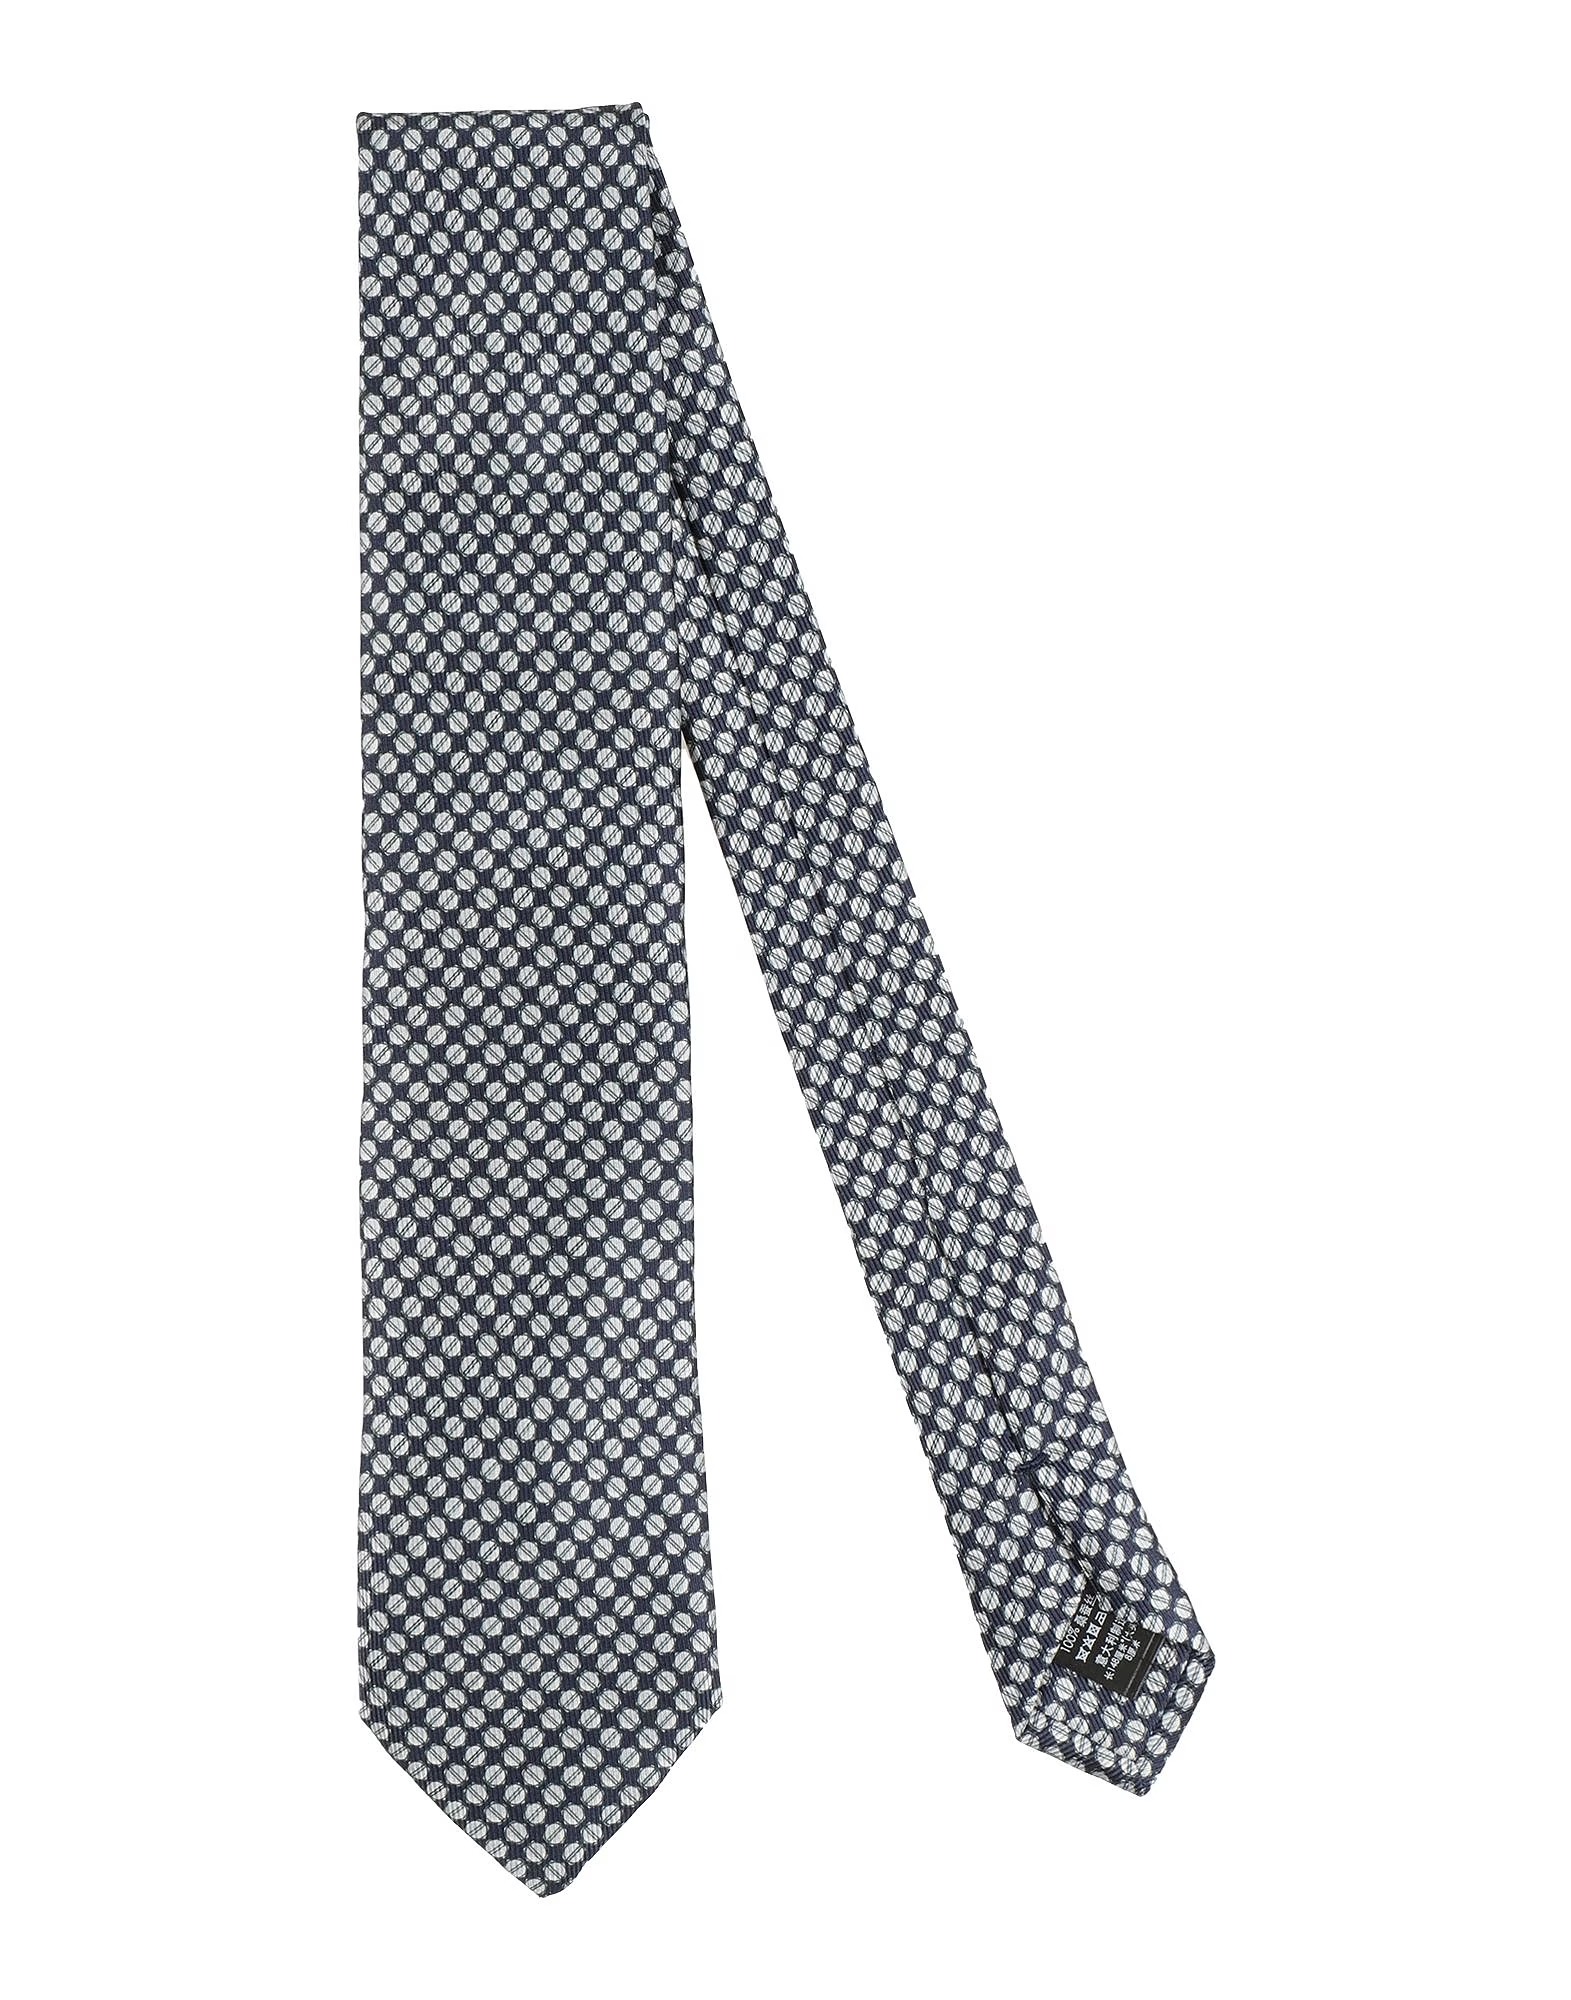 Галстук Dunhill, темно-синий синий галстук с орнаментом benjamin james 811489